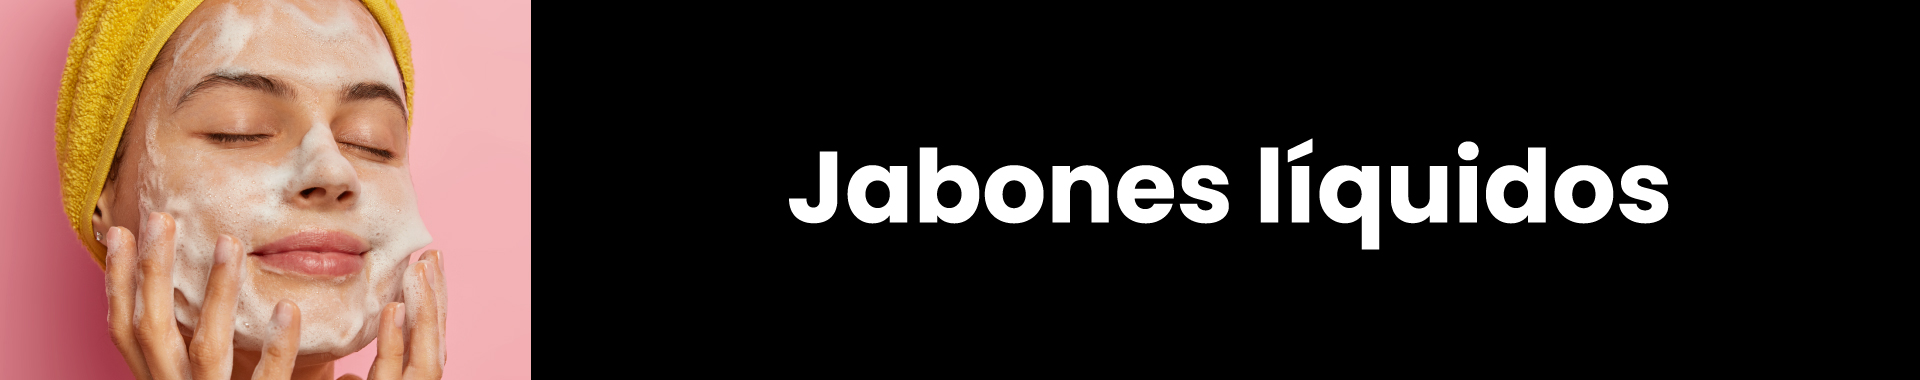 Banner jabones